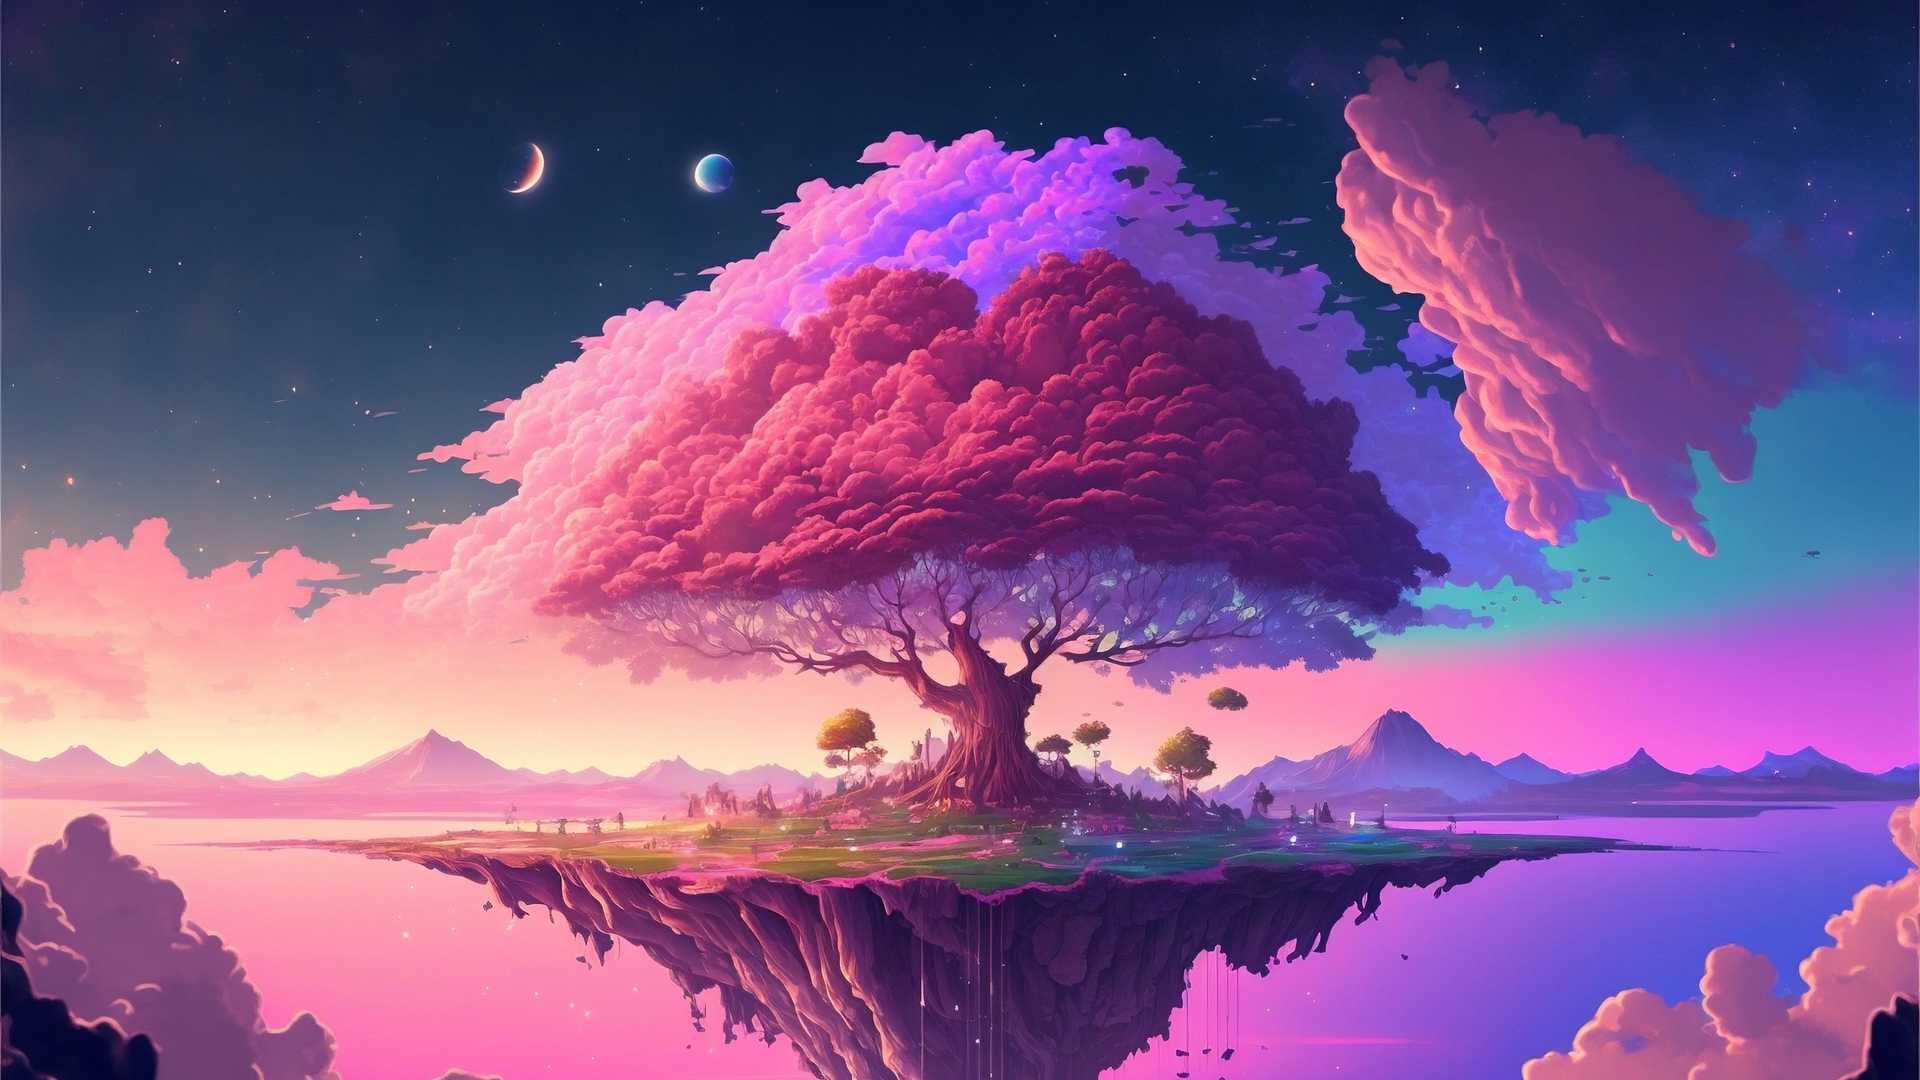 粉色的树木 岛屿 粉色云 树木 星星 月亮 唯美 动漫 风景 壁纸